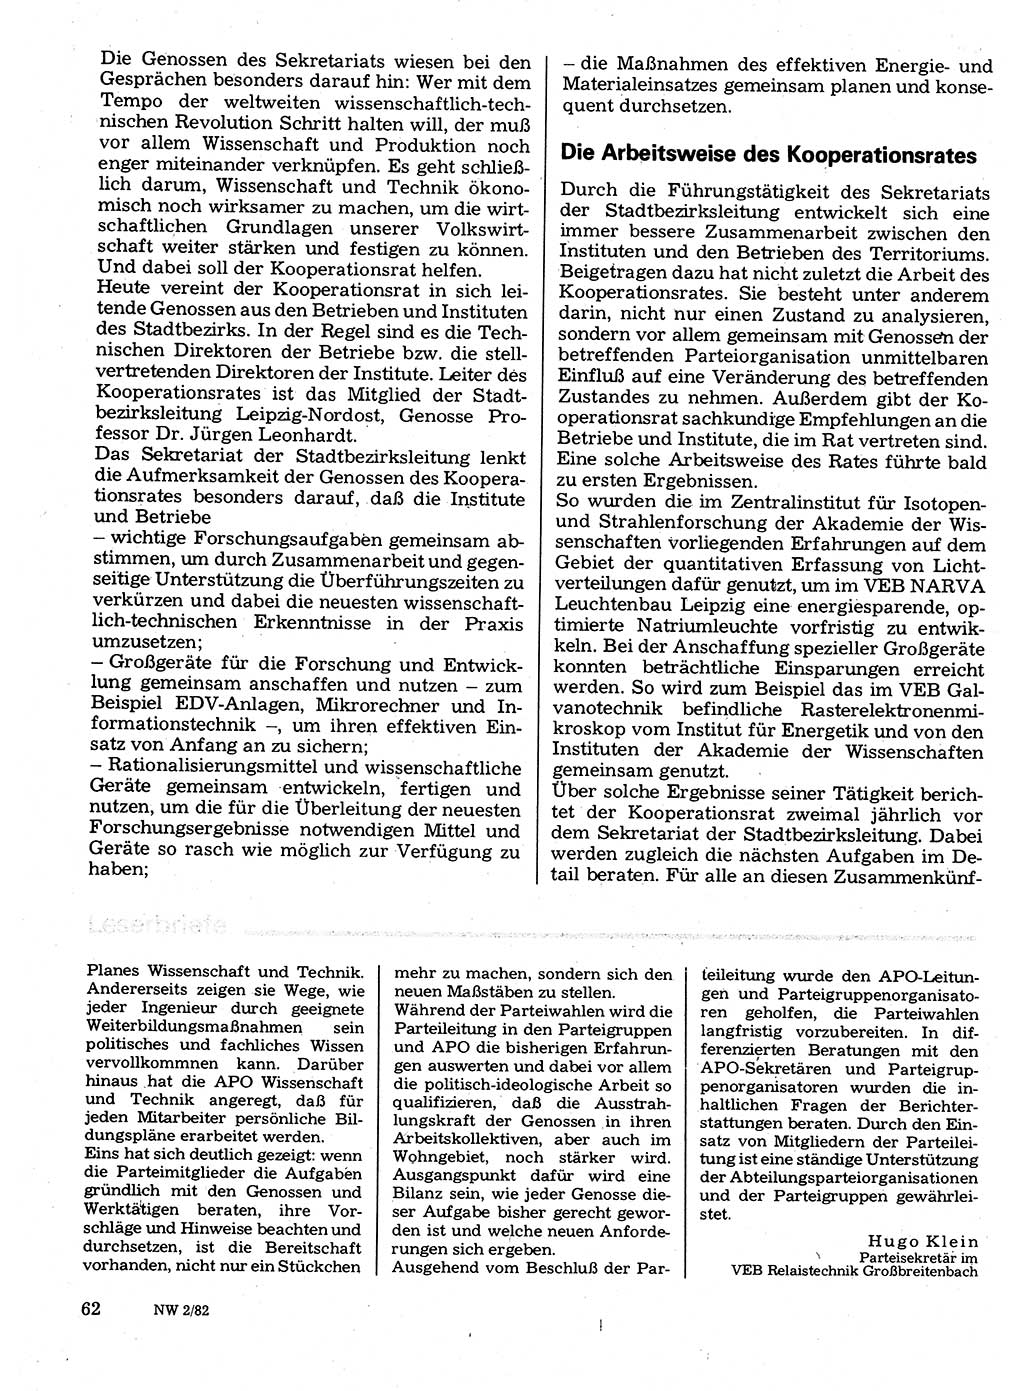 Neuer Weg (NW), Organ des Zentralkomitees (ZK) der SED (Sozialistische Einheitspartei Deutschlands) für Fragen des Parteilebens, 37. Jahrgang [Deutsche Demokratische Republik (DDR)] 1982, Seite 62 (NW ZK SED DDR 1982, S. 62)